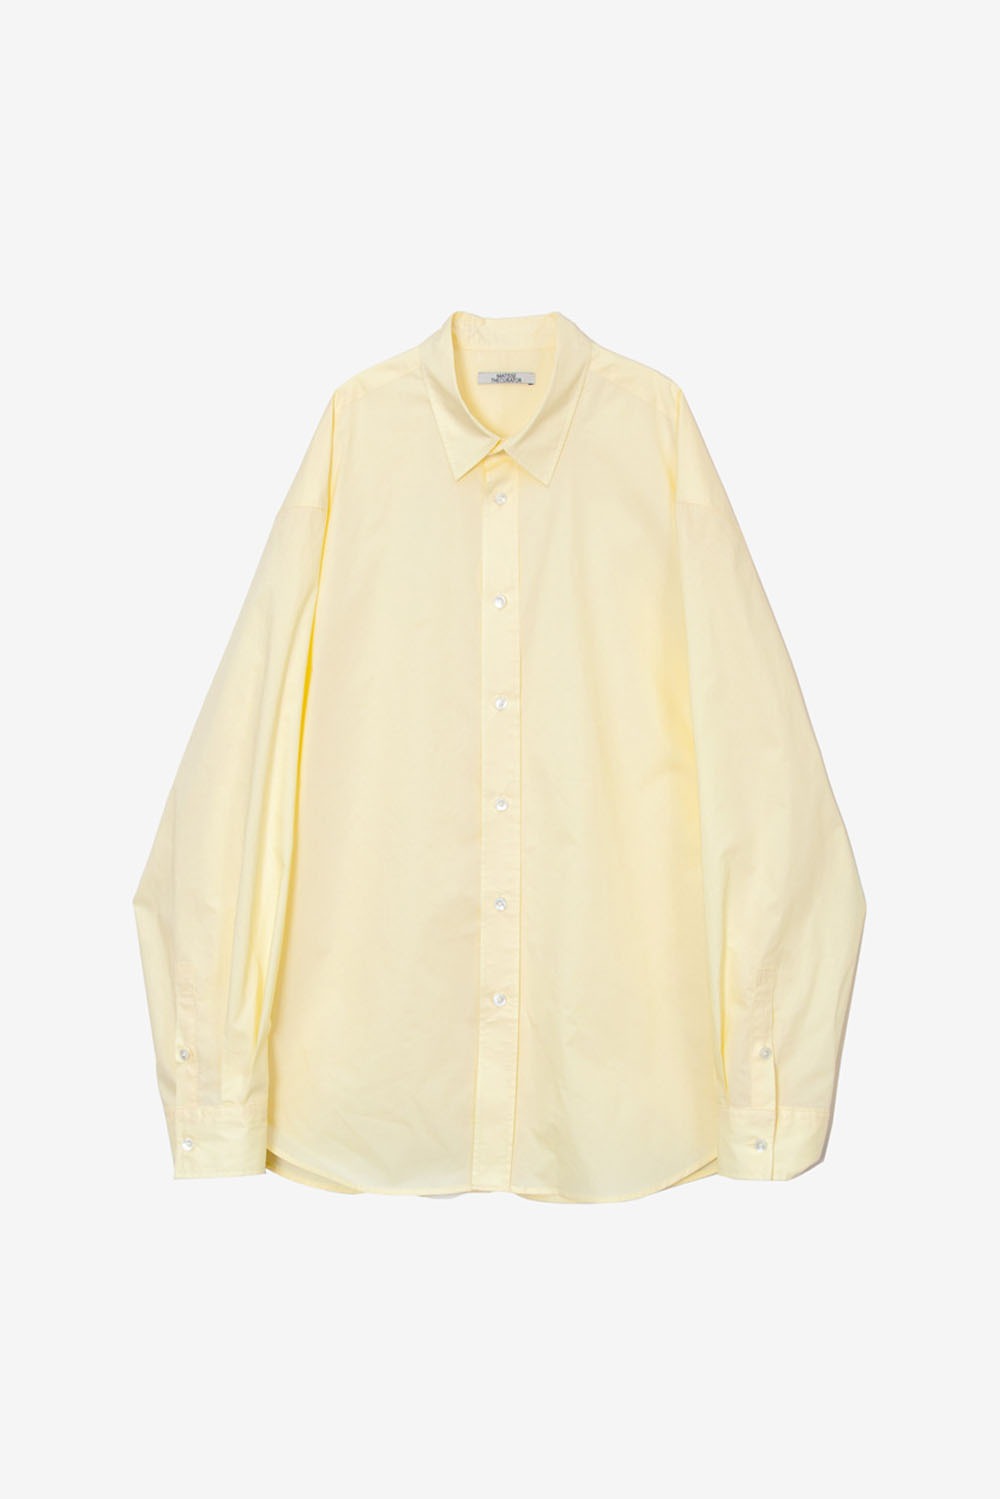 Collector Shirts-Lemon